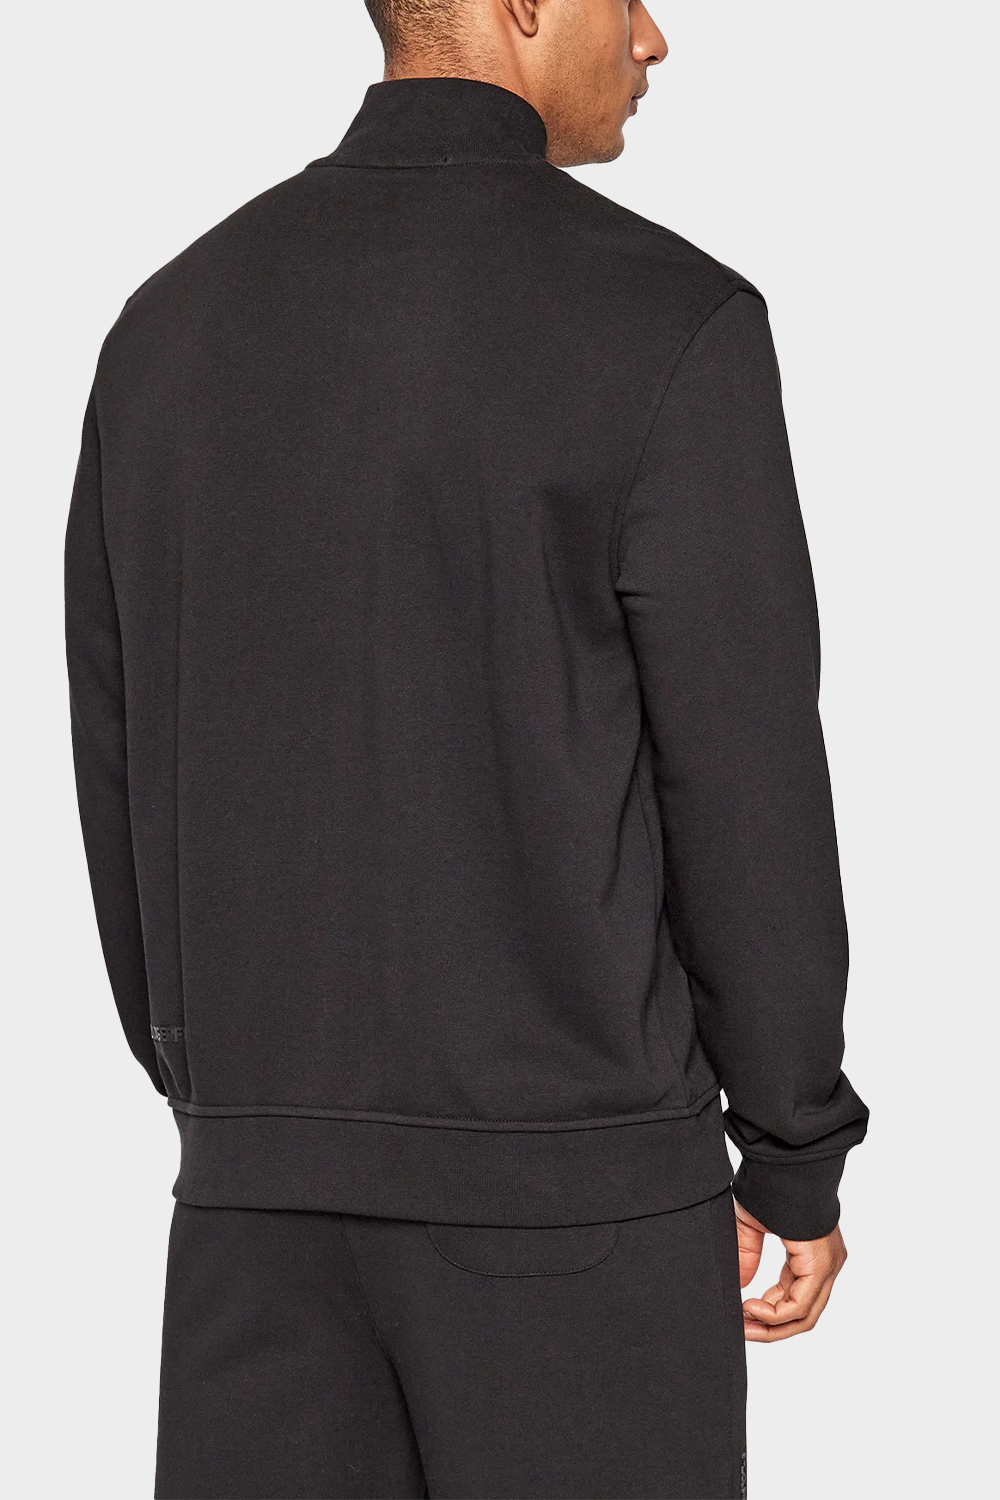 ג'קט טרנינג לגברים בצבע שחור KARL LAGERFELD Vendome online | ונדום .